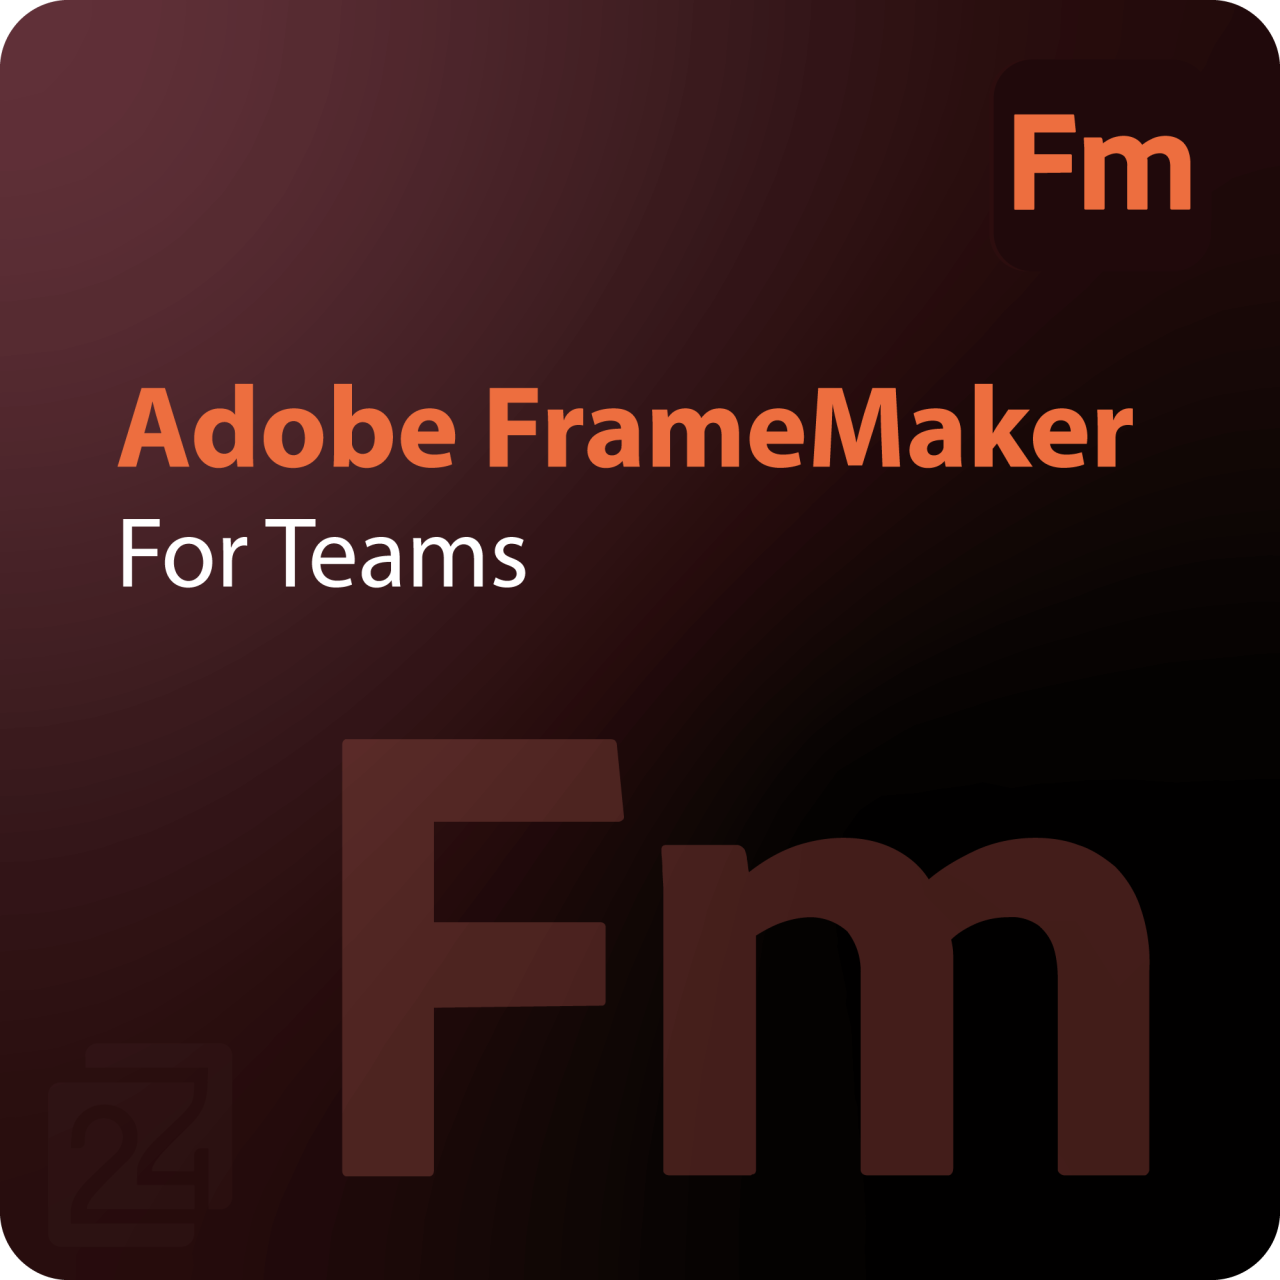 Adobe FrameMaker for Teams